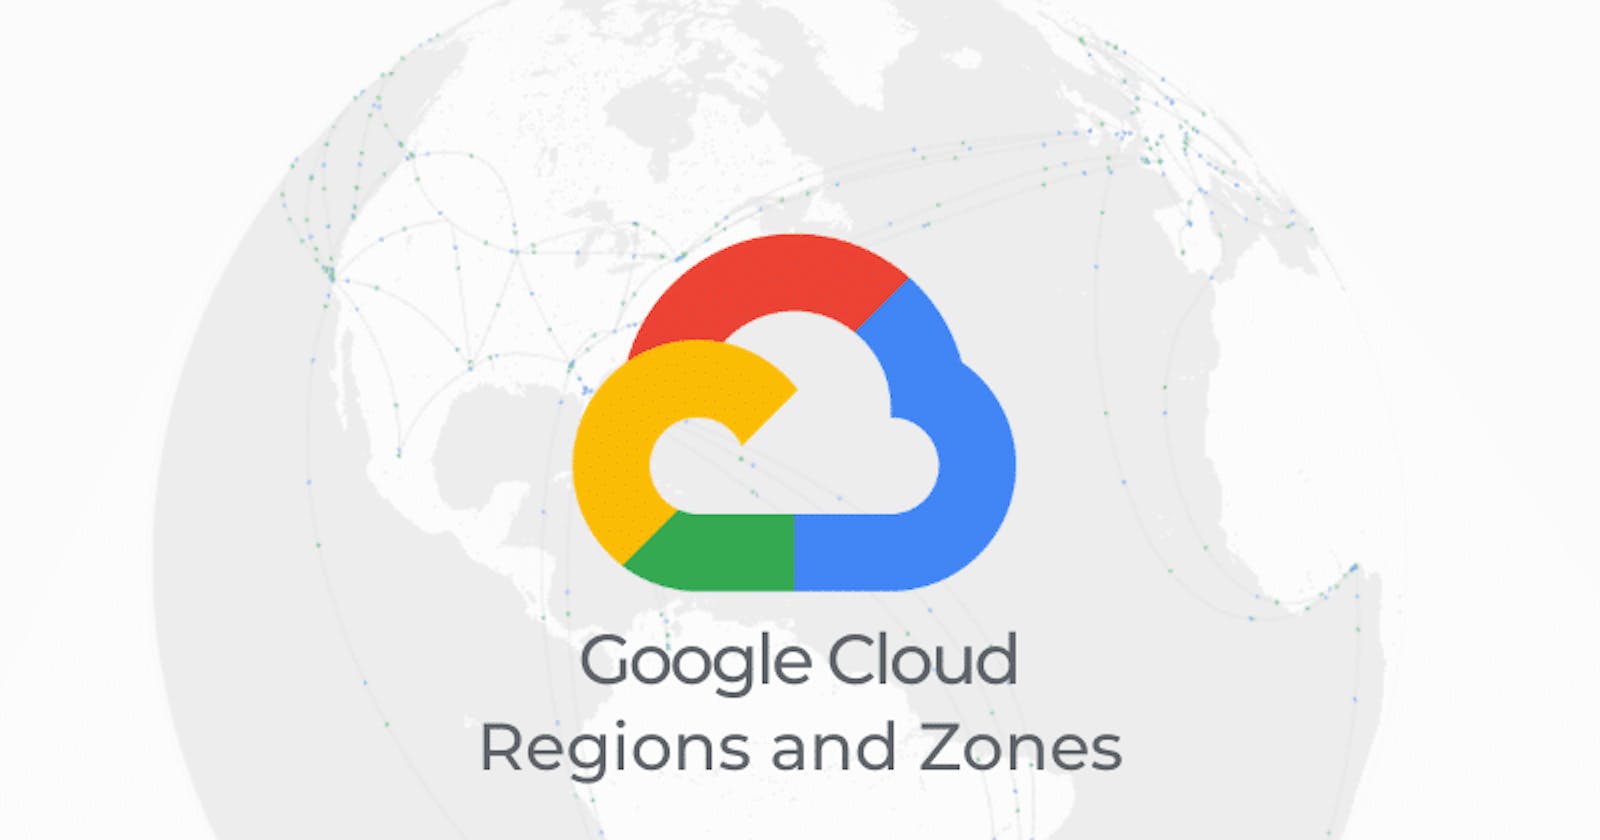 Understand Google Cloud Regions and Zones